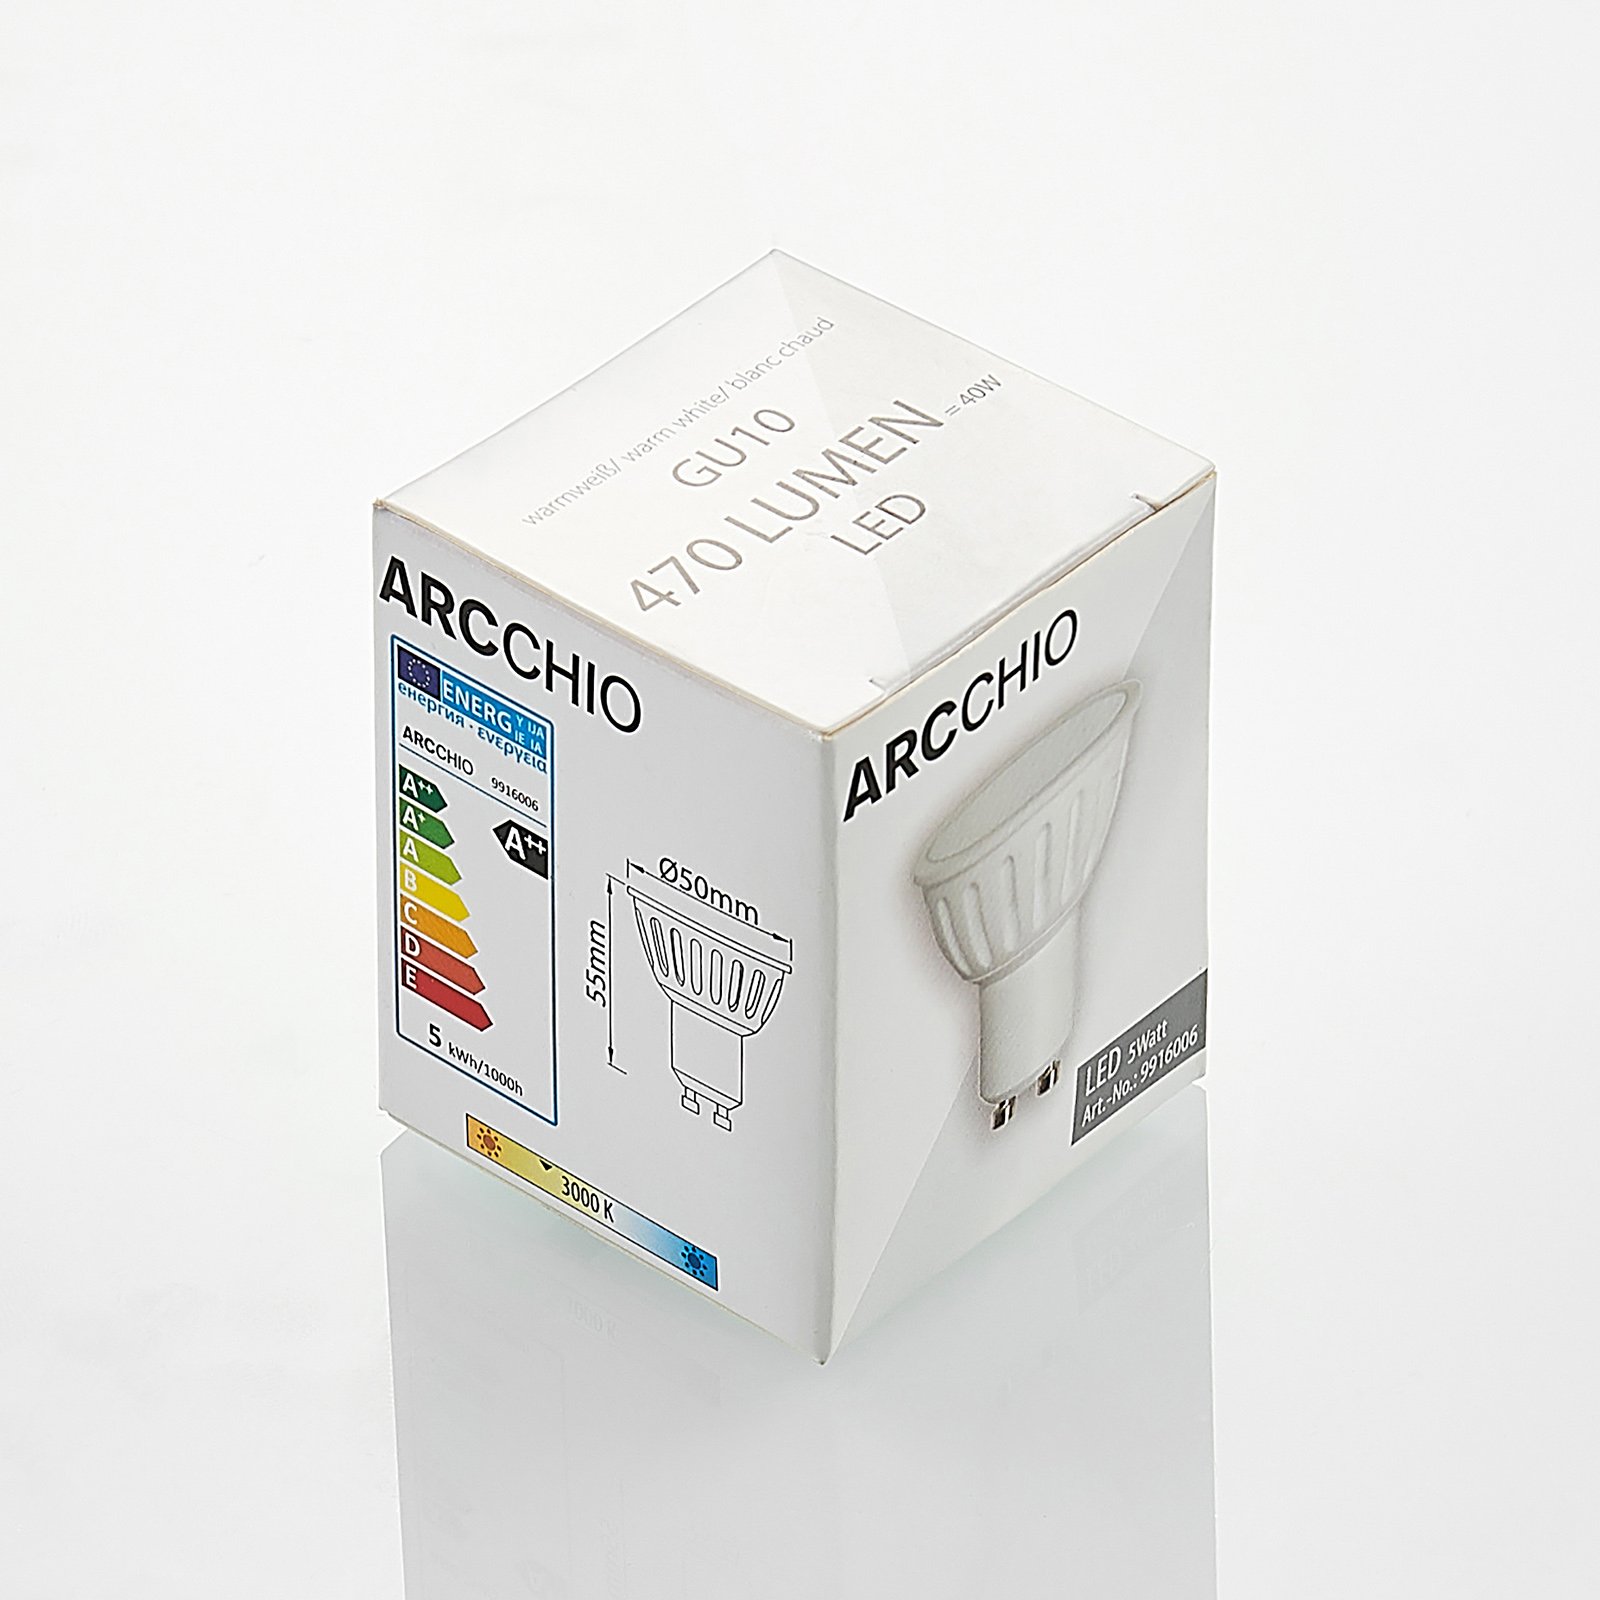 Arcchio LED-Reflektor GU10 100° 5W 3.000K